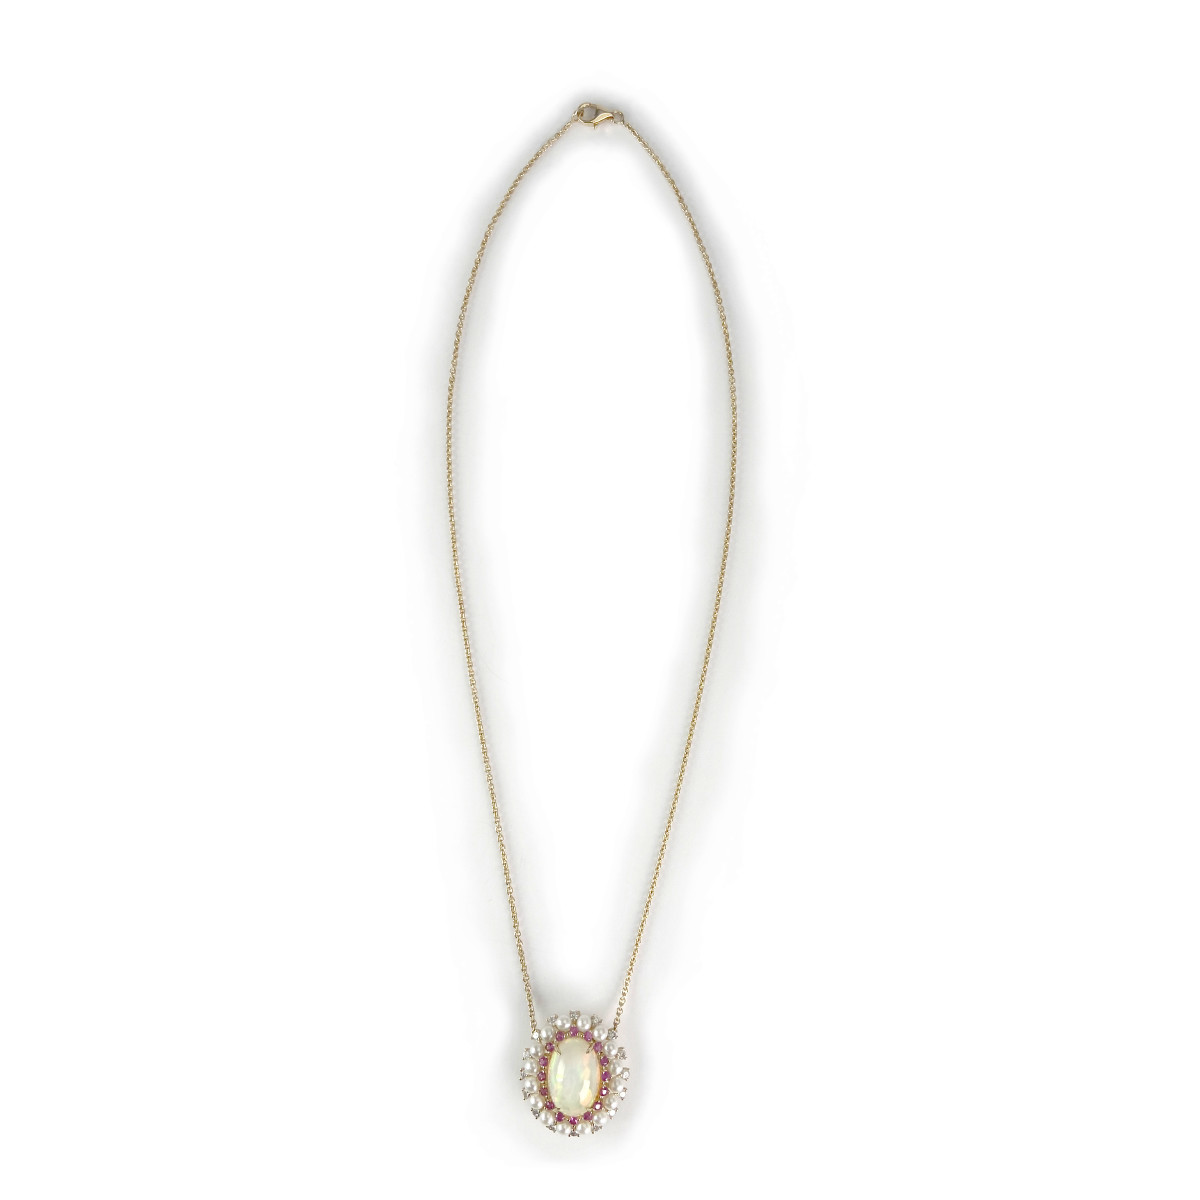 Collier d'occasion or 750 jaune opale rubis diamants perles de culture 43 cm - vue 2